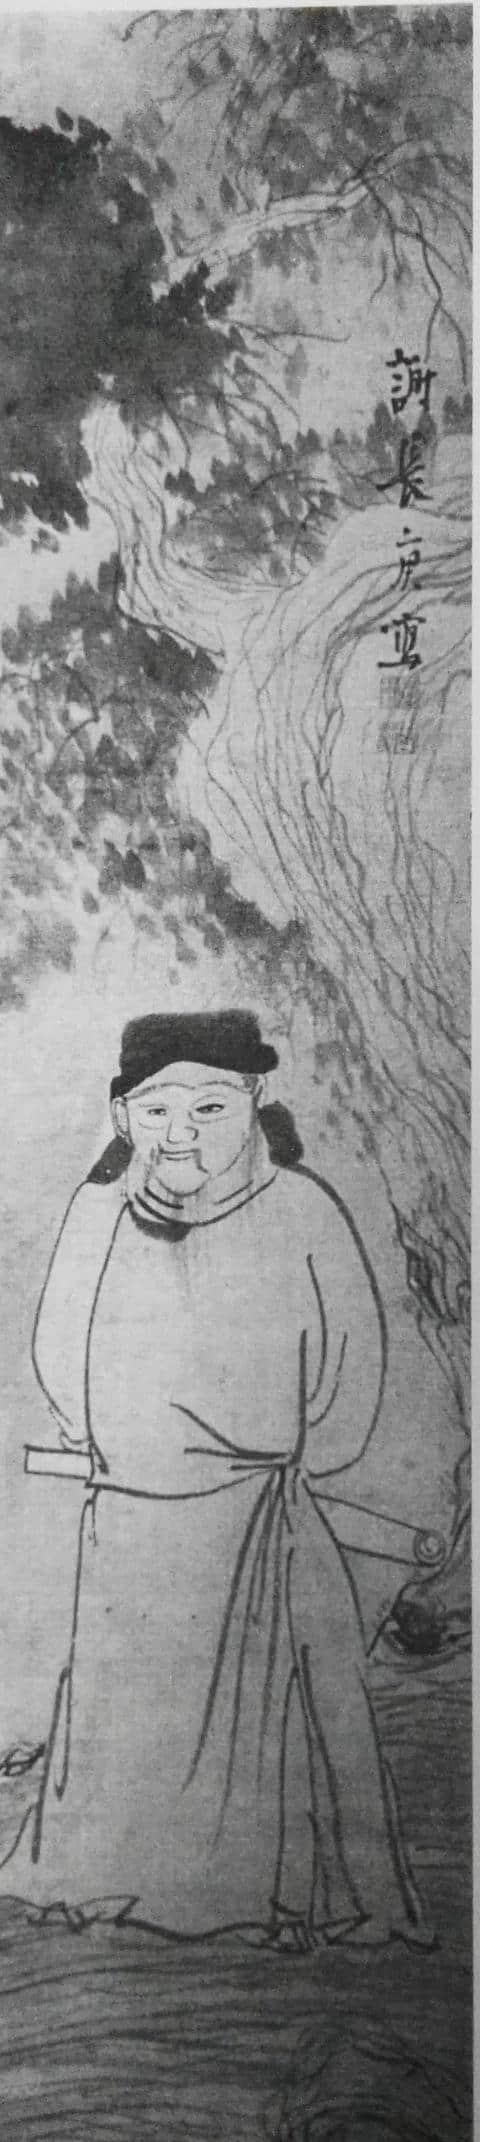 归去来兮，一幅绘画于日本的《武陵桃源图》